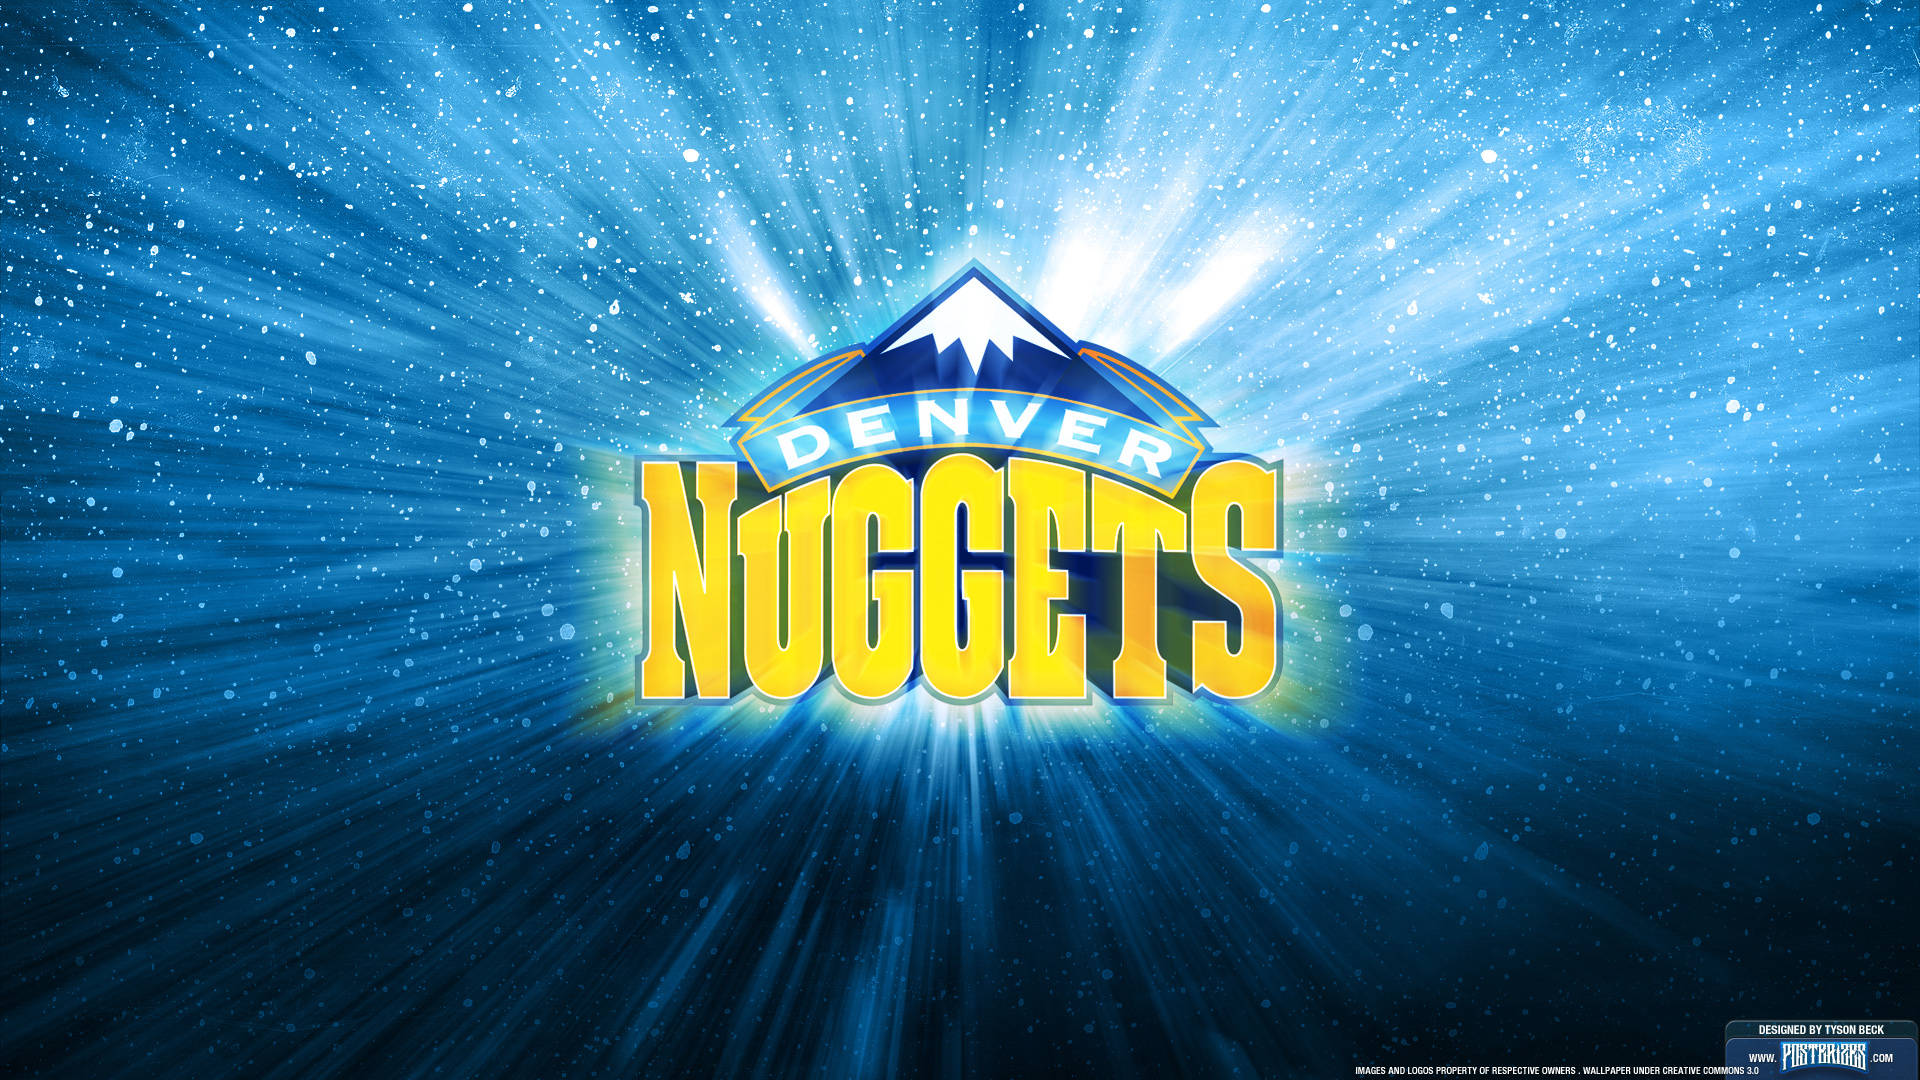 Denver Nuggets Basketball Team Background